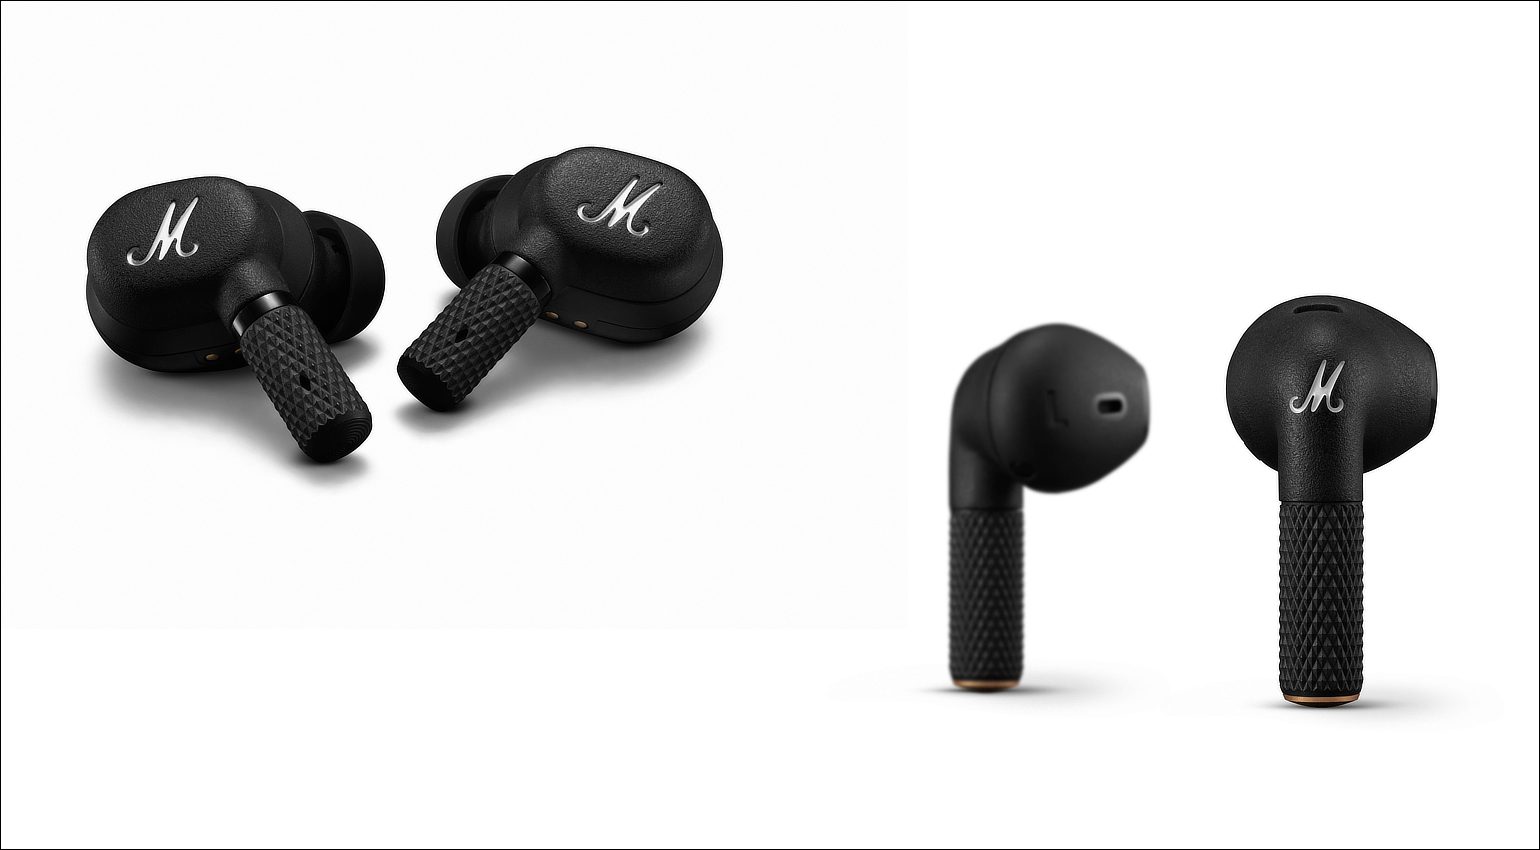 und III: Marshall A.N.C. Headphones Minor Bluetooth-Kopfhörer Motif